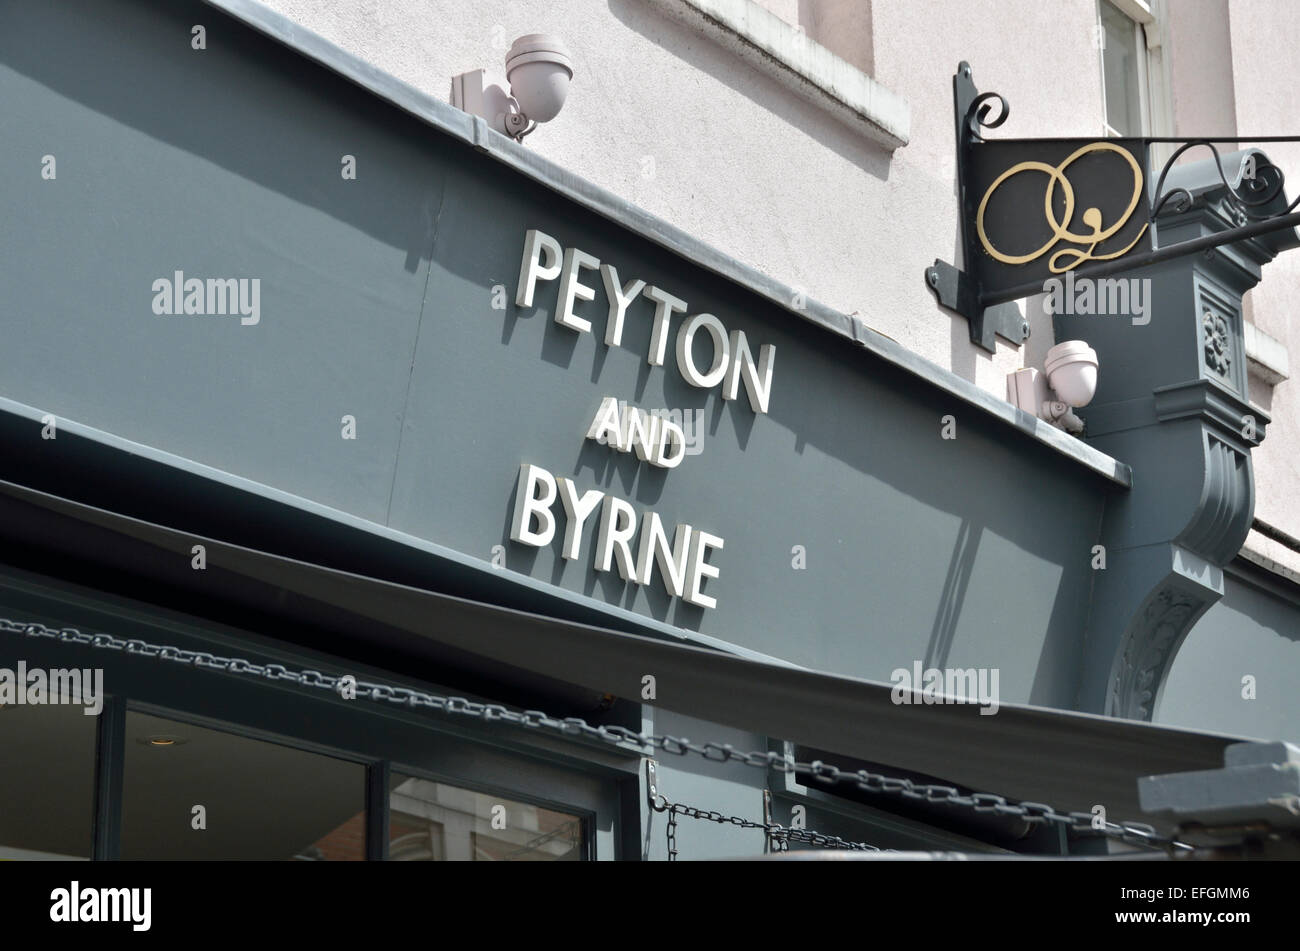 Peyton e Byrne il Bakery Cafe in Covent Garden di Londra, Regno Unito Foto Stock